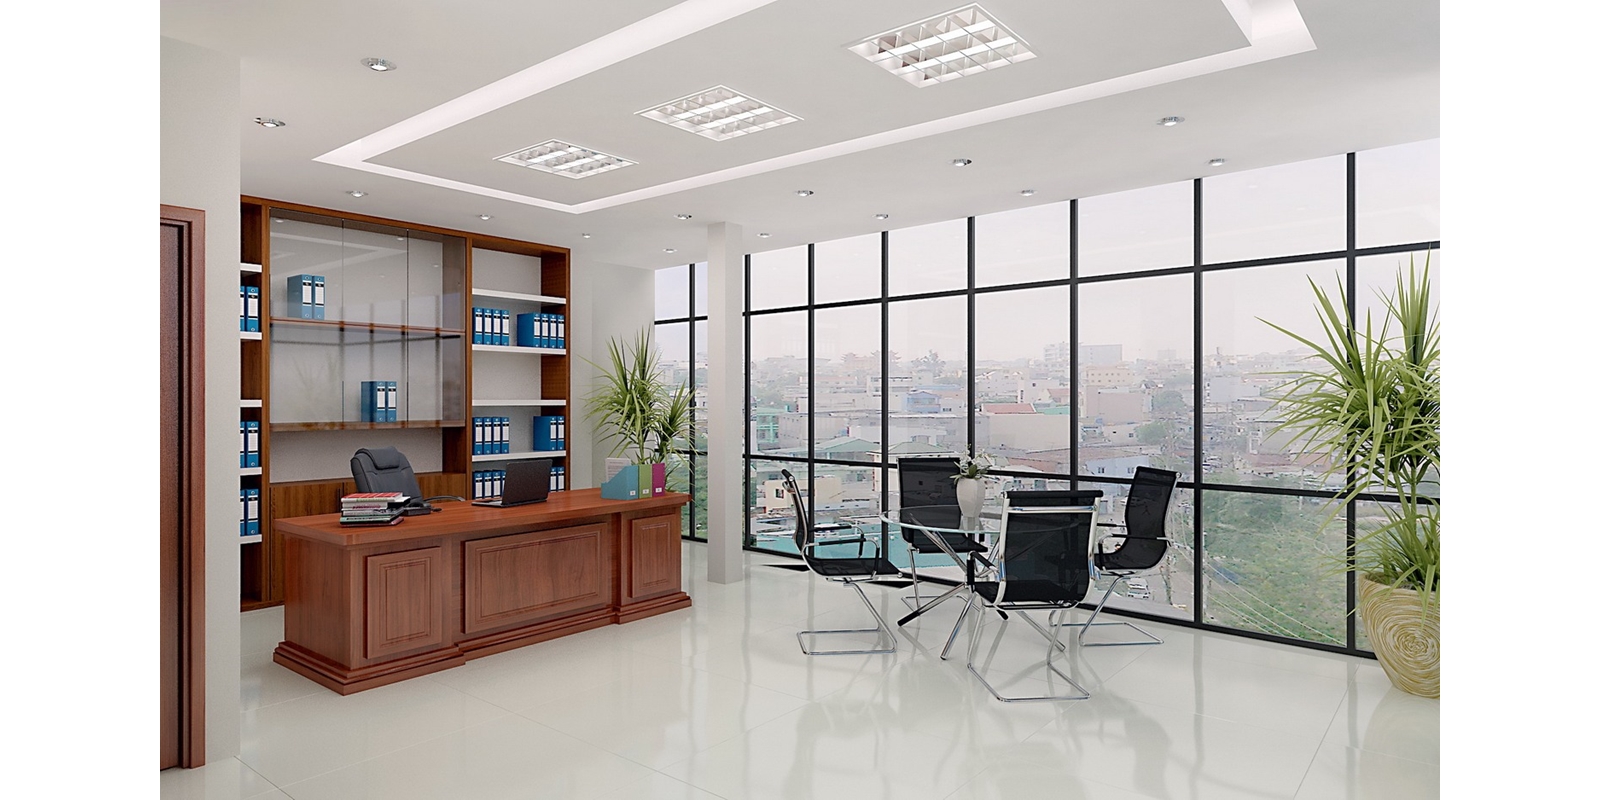 Nội Thất Văn Phòng Hòa Phát – mách bạn bí quyết chọn nội thất văn phòng đẹp - Nội thất cao cấp Gia Phát tại TPHCM